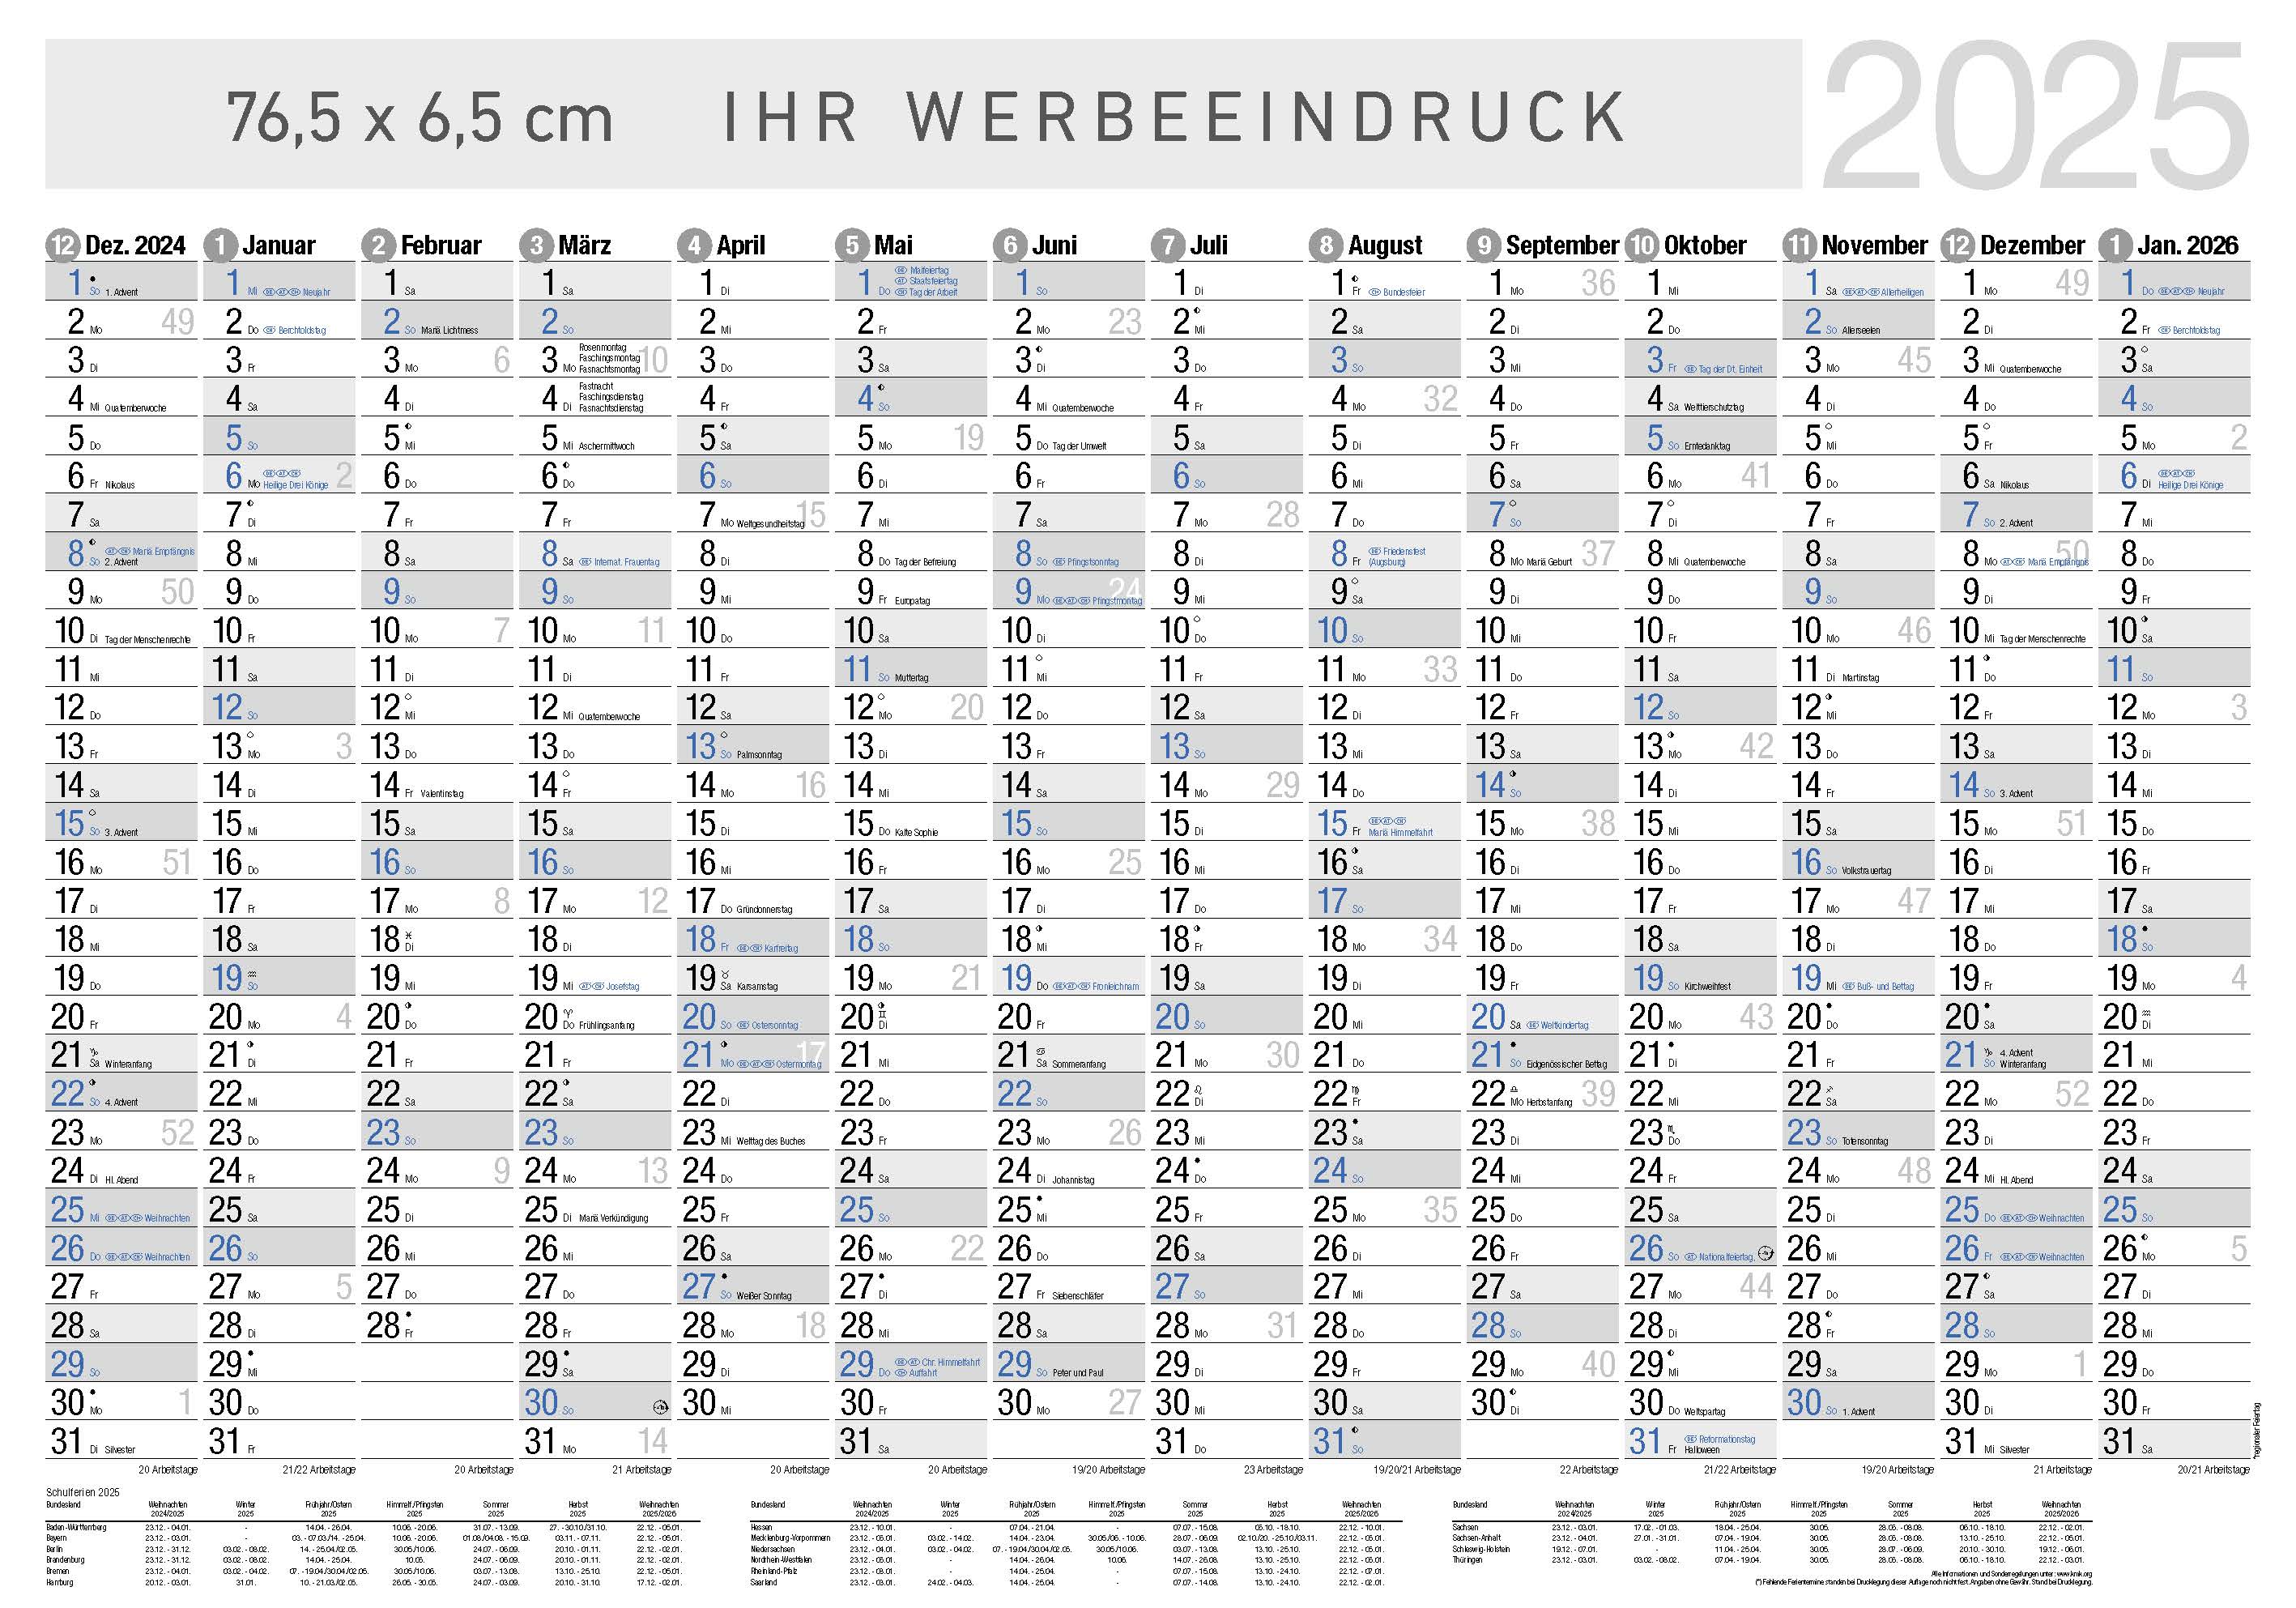 Jahresplaner Bodensee XL
14 Monate schwarz/blau
Deutsch - 3-sprachig DE-AT-CH